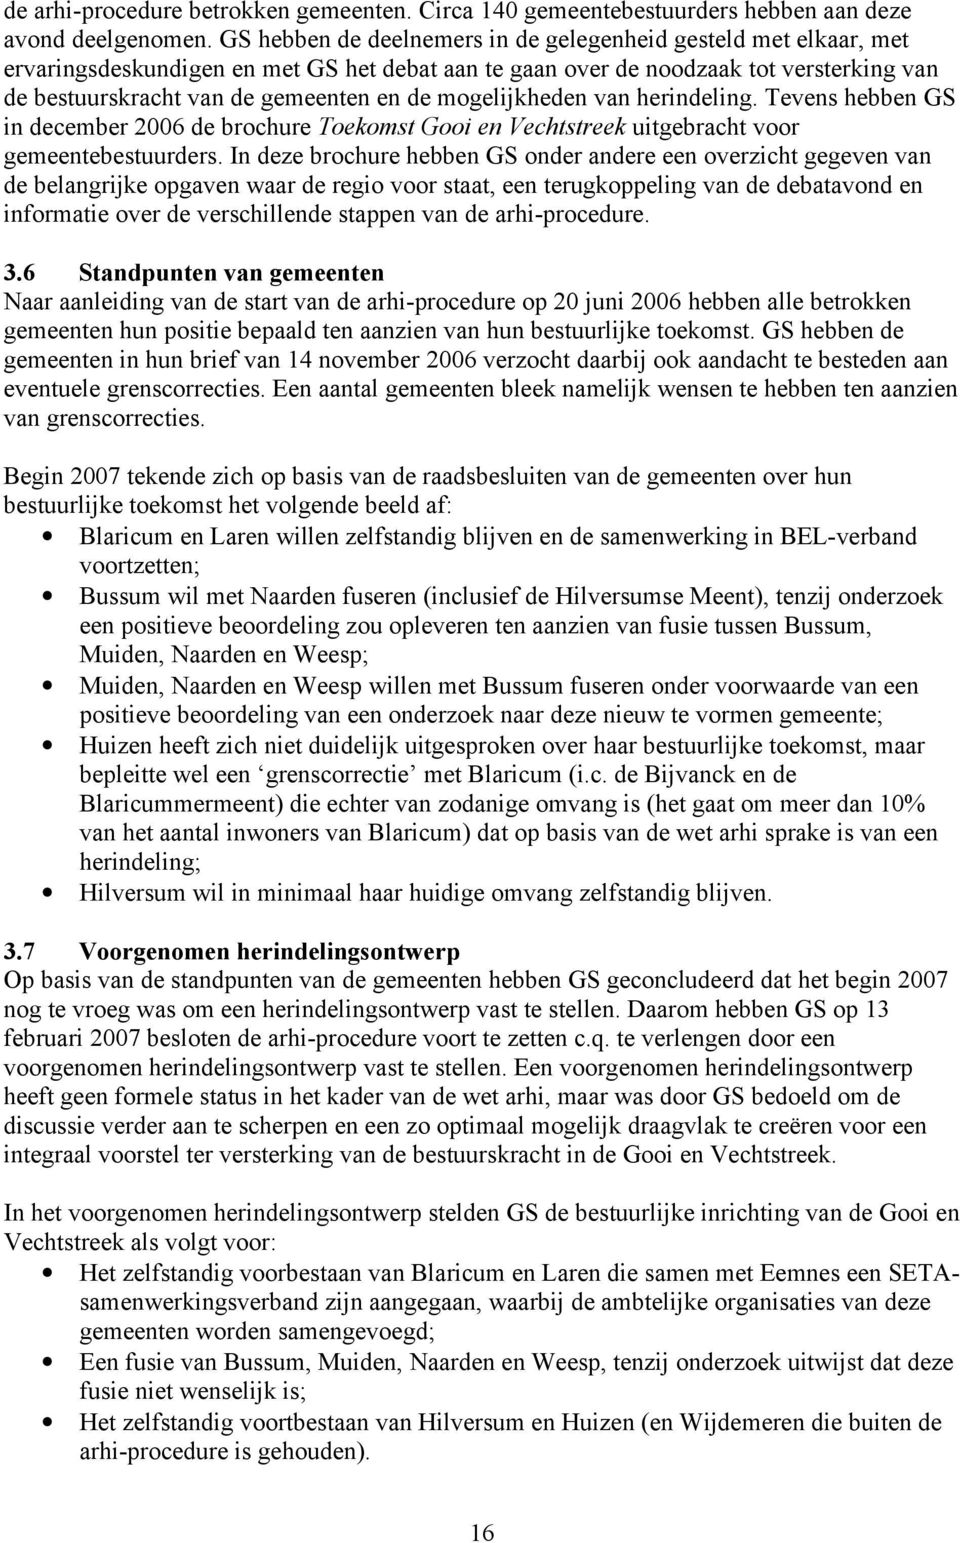 mogelijkheden van herindeling. Tevens hebben GS in december 2006 de brochure Toekomst Gooi en Vechtstreek uitgebracht voor gemeentebestuurders.